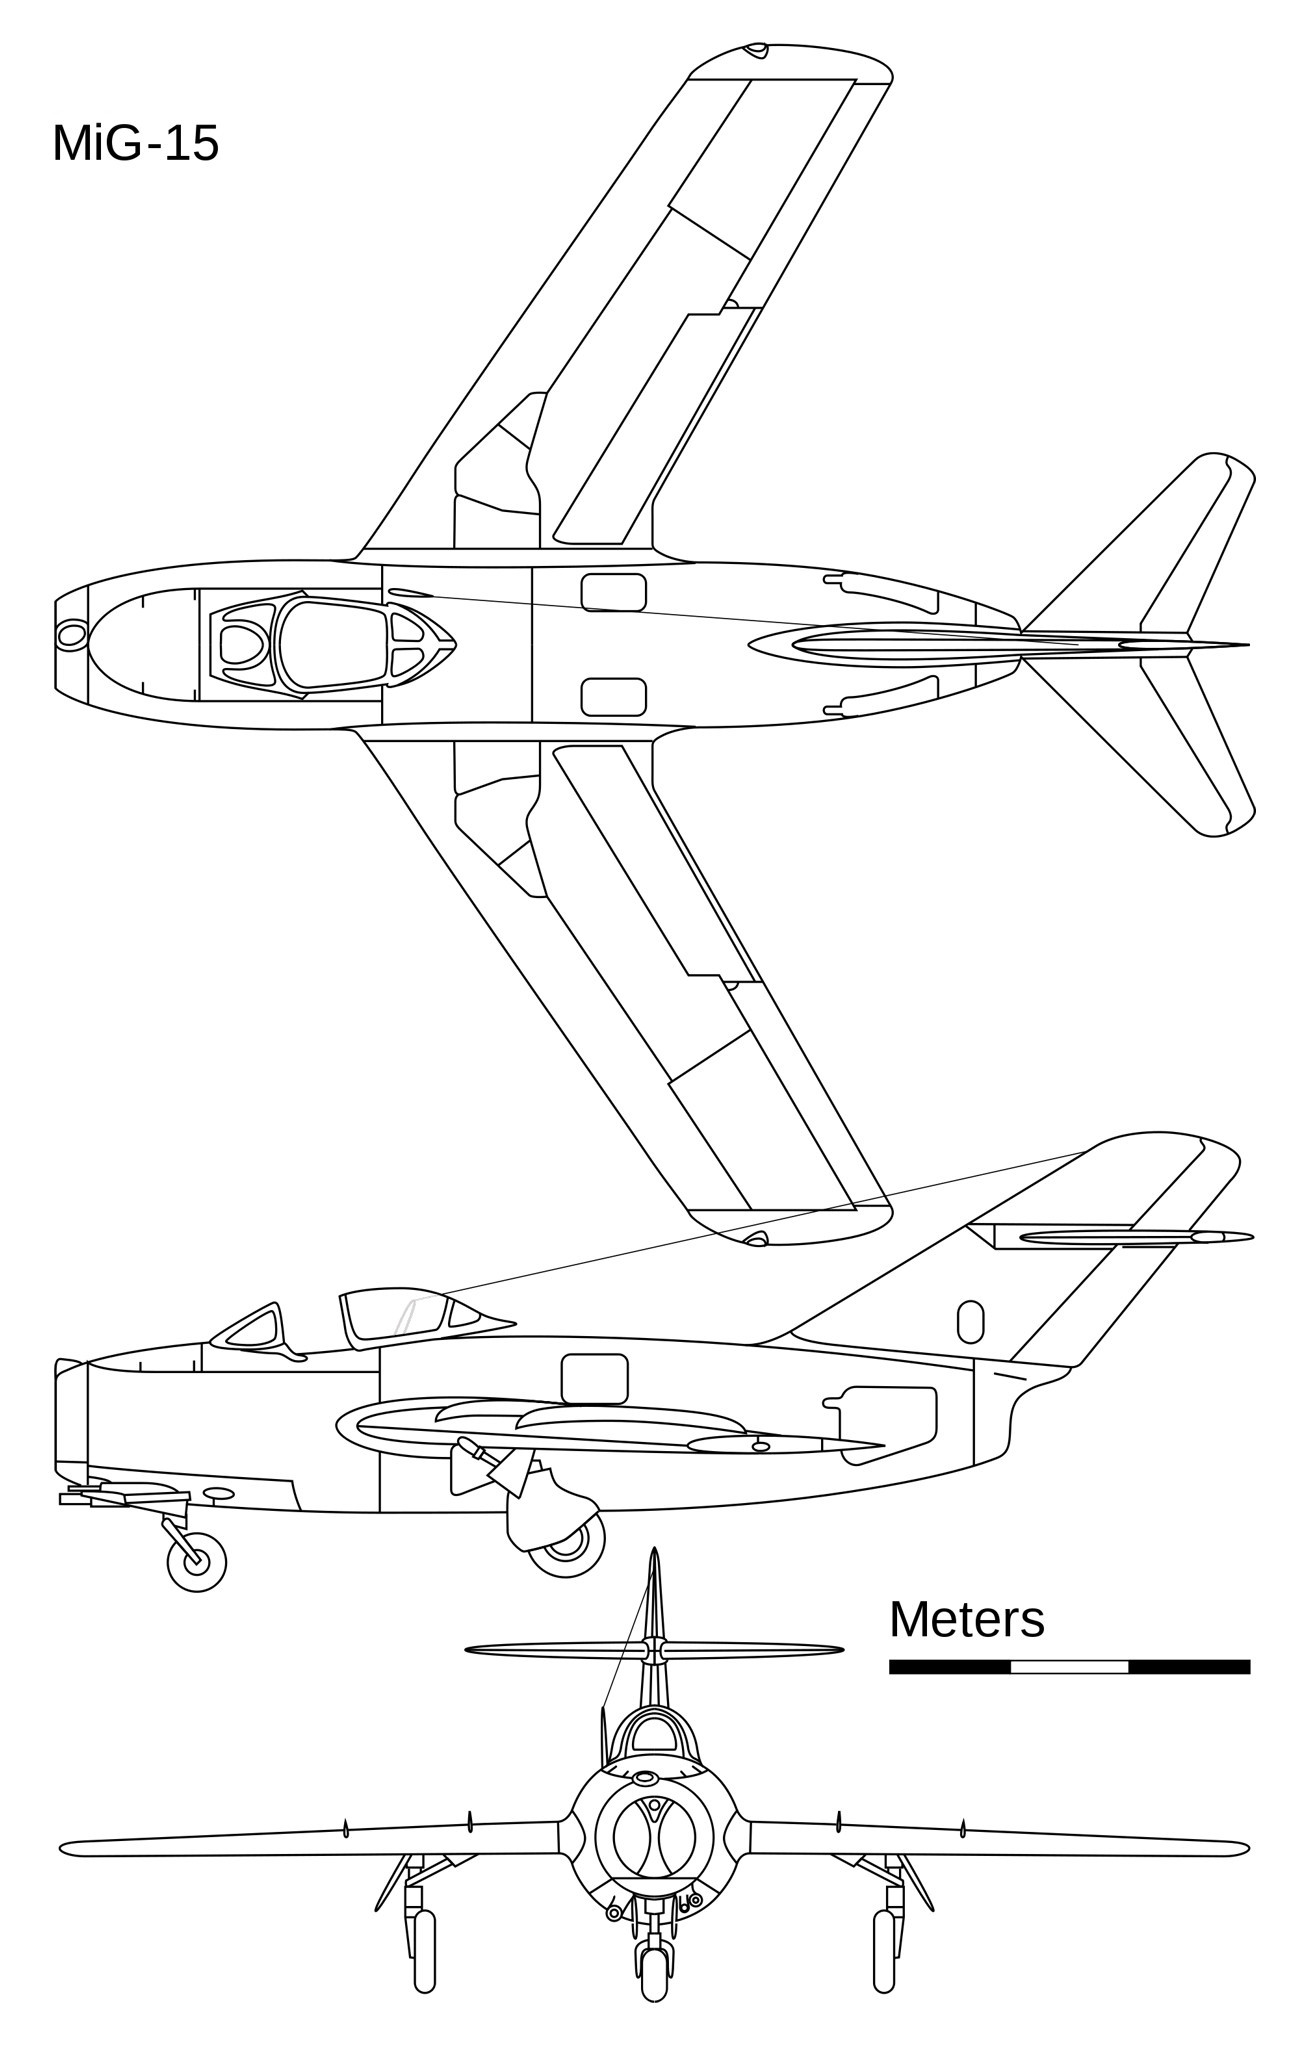 MiG-15 BIS - Skizze der MiG